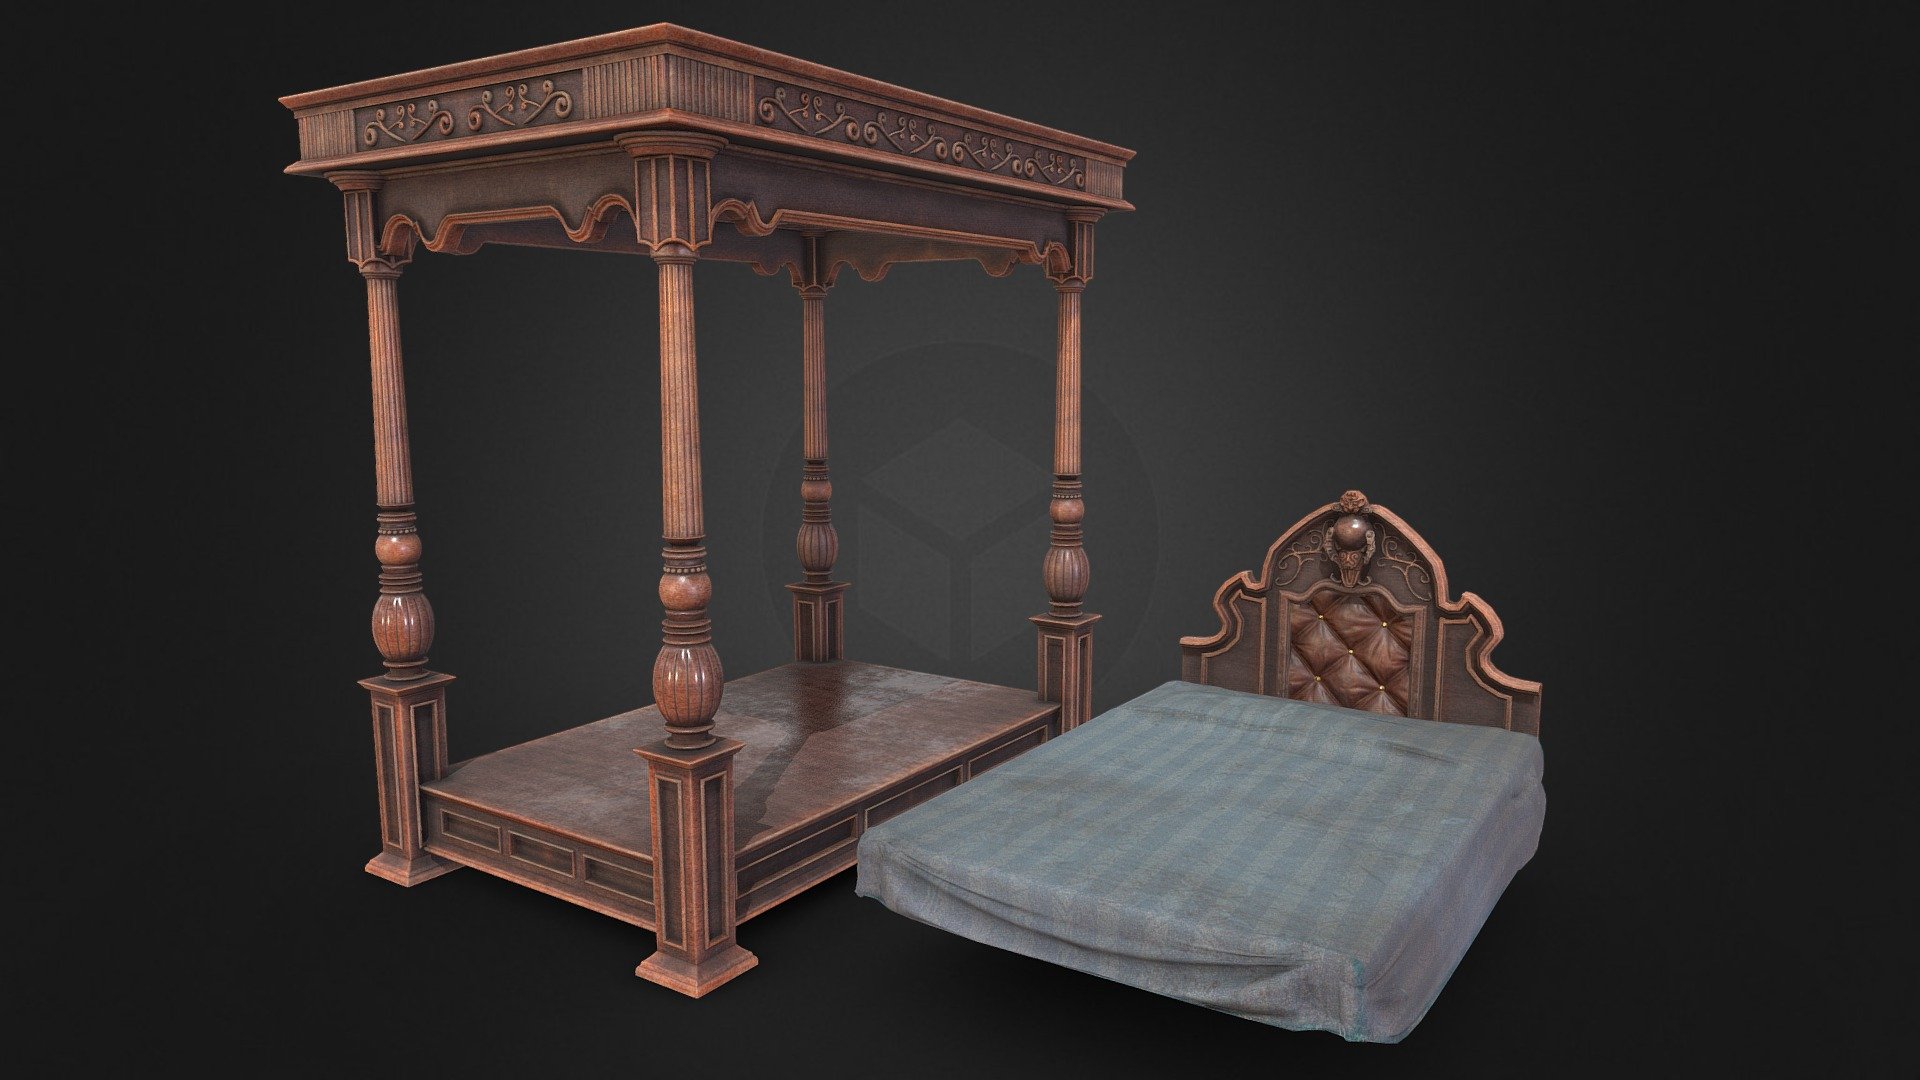 Game ready - Victorian Bed - Buy Royalty Free 3D model by Aaron Winnenberg (@winnenbergaaron) 3d model